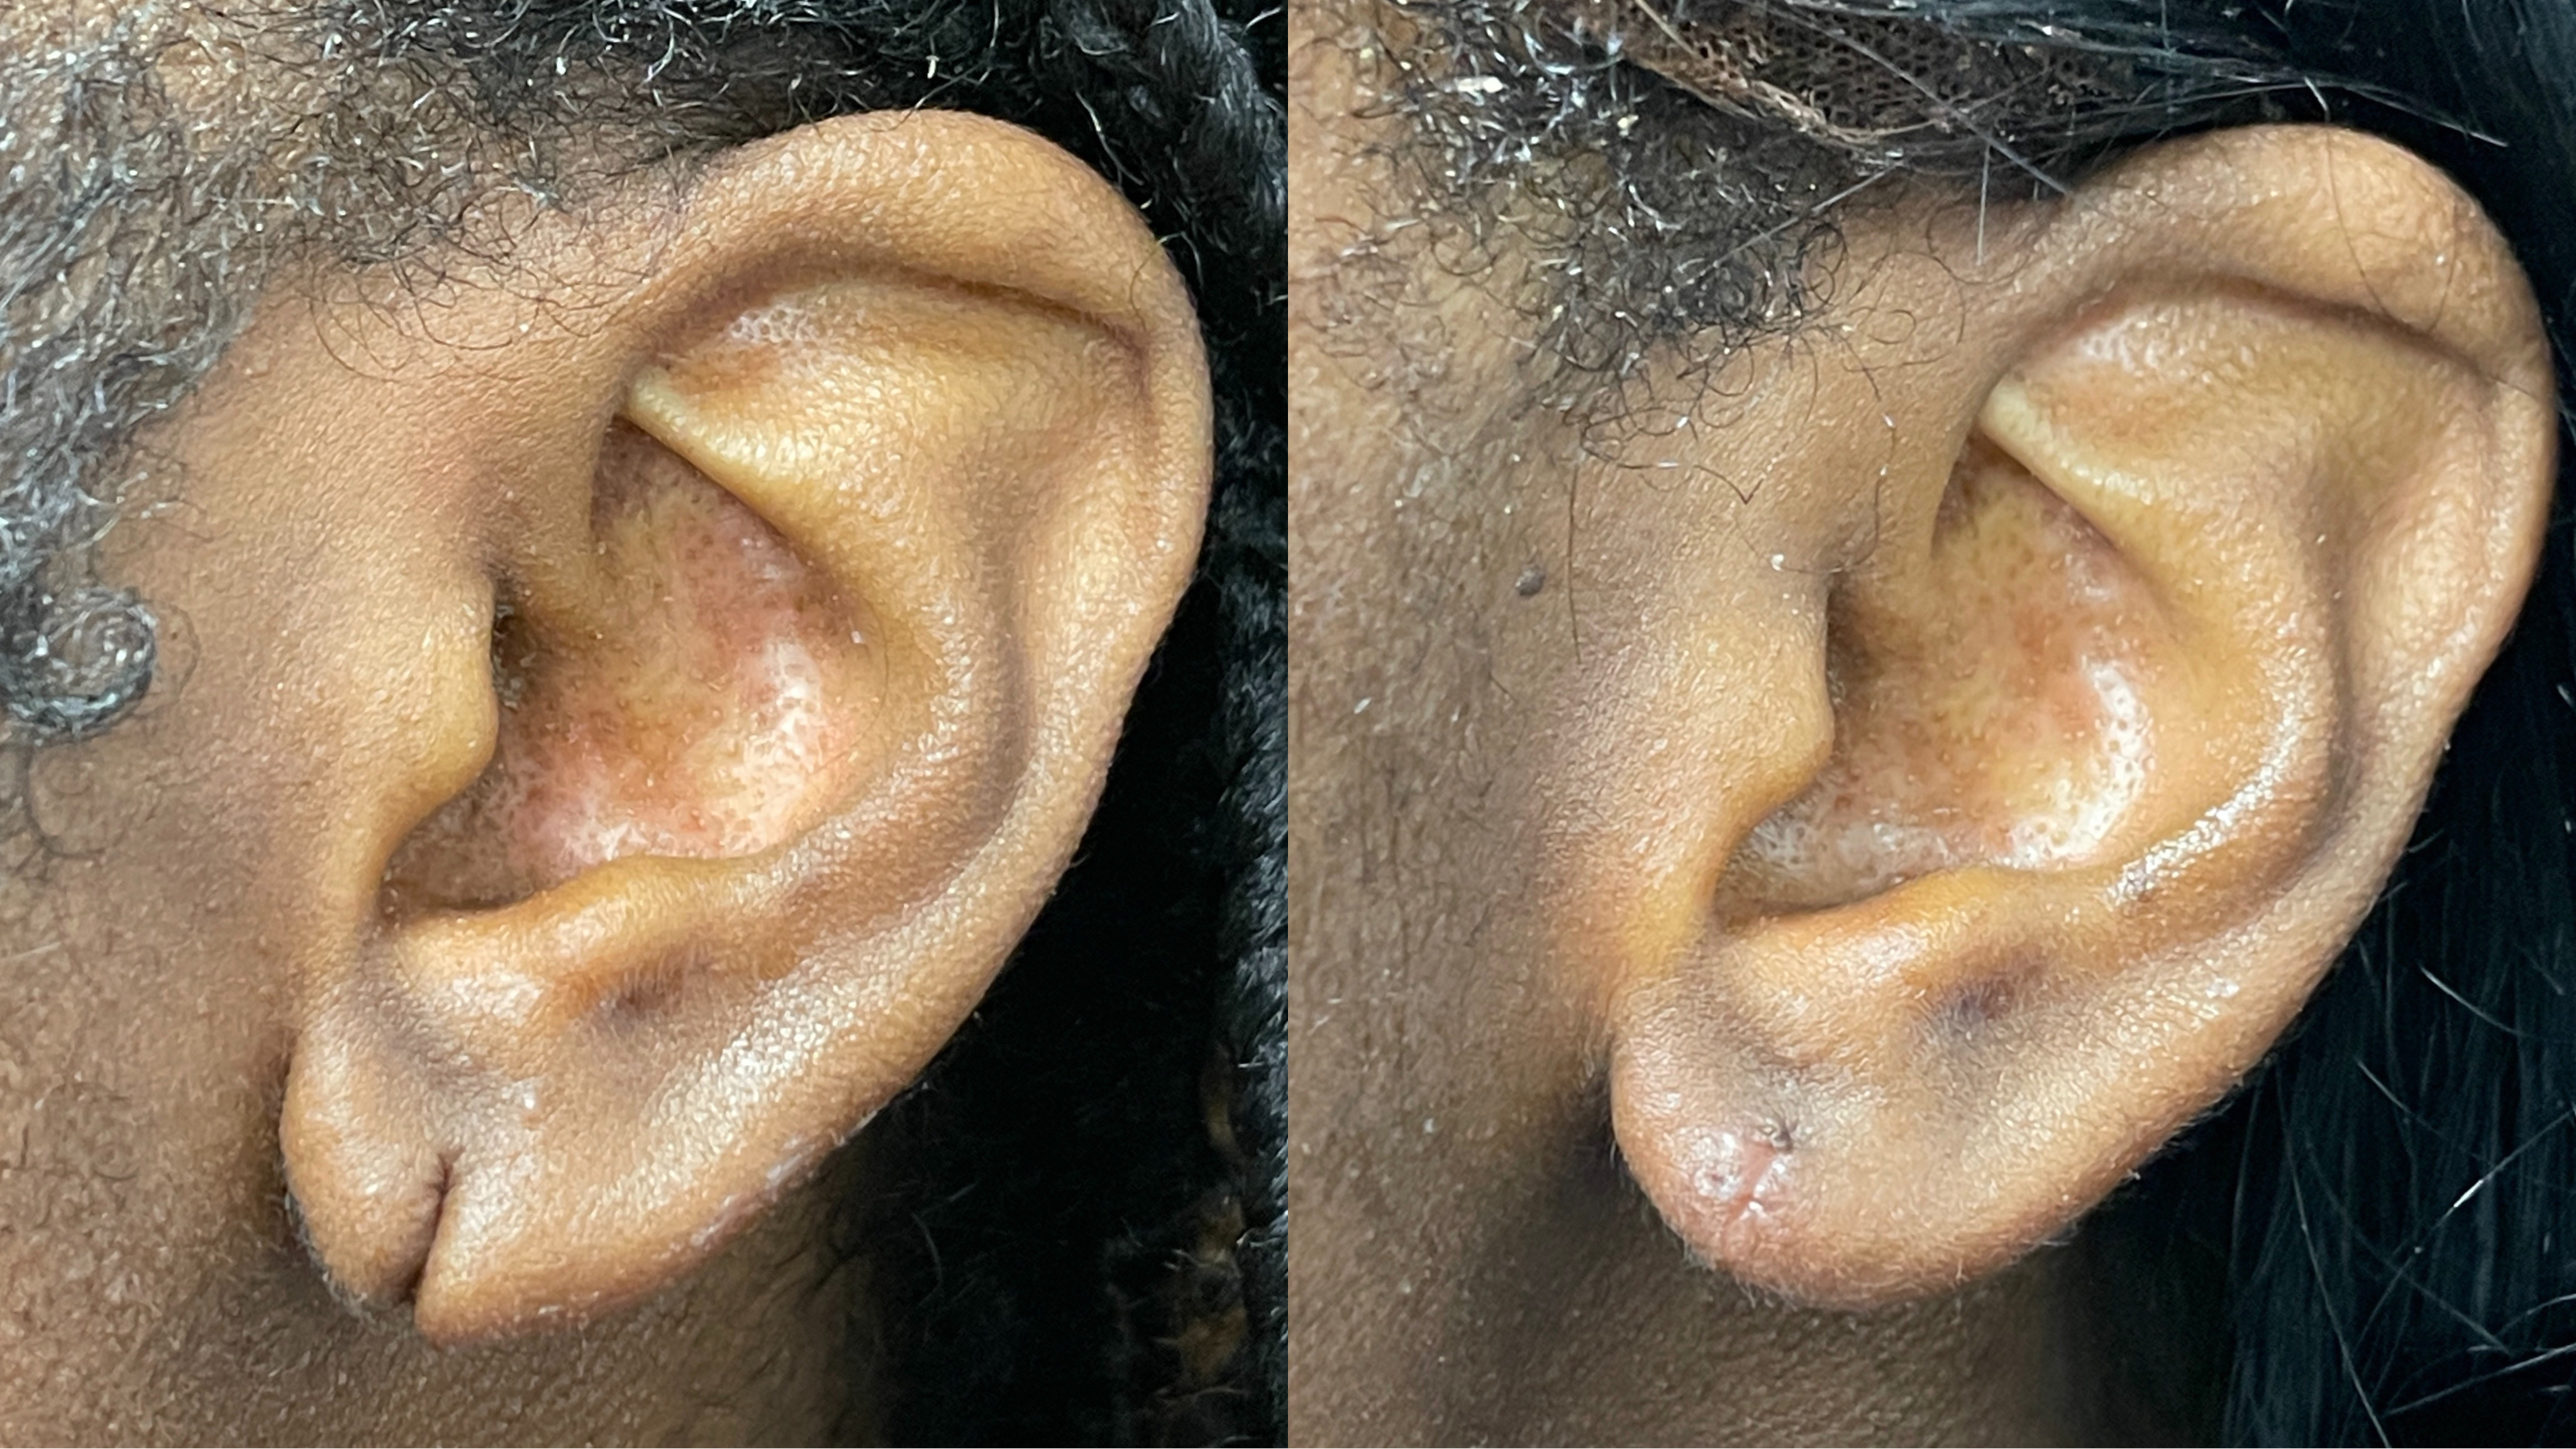 Ear Lobe Repair in Westchester NY